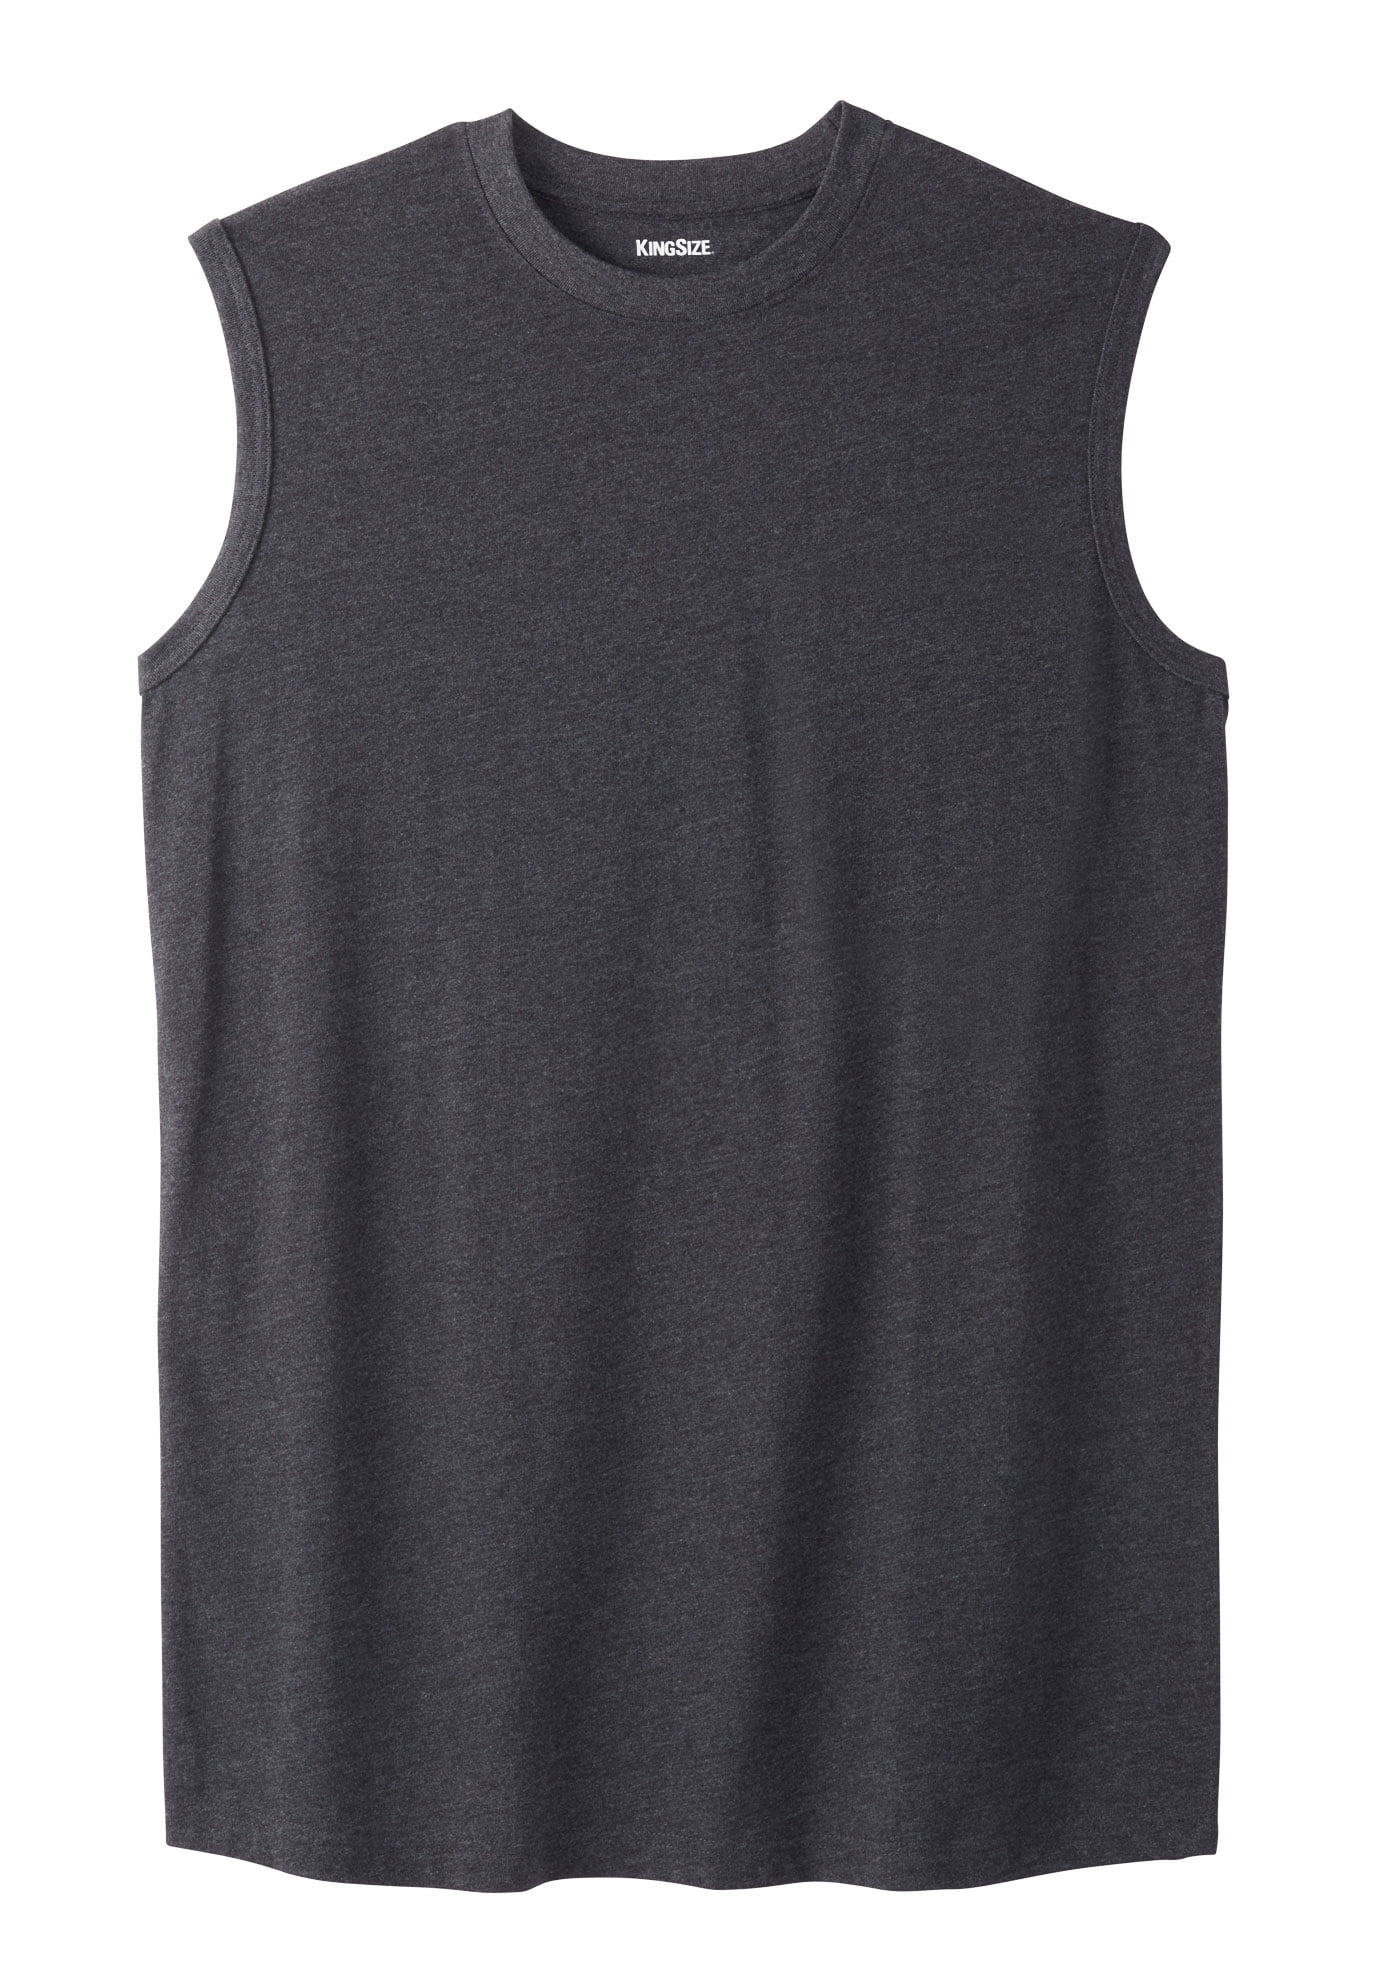 Kingsize Men's Big & Tall Shrink-Less™ Lightweight Muscle T-Shirt ...